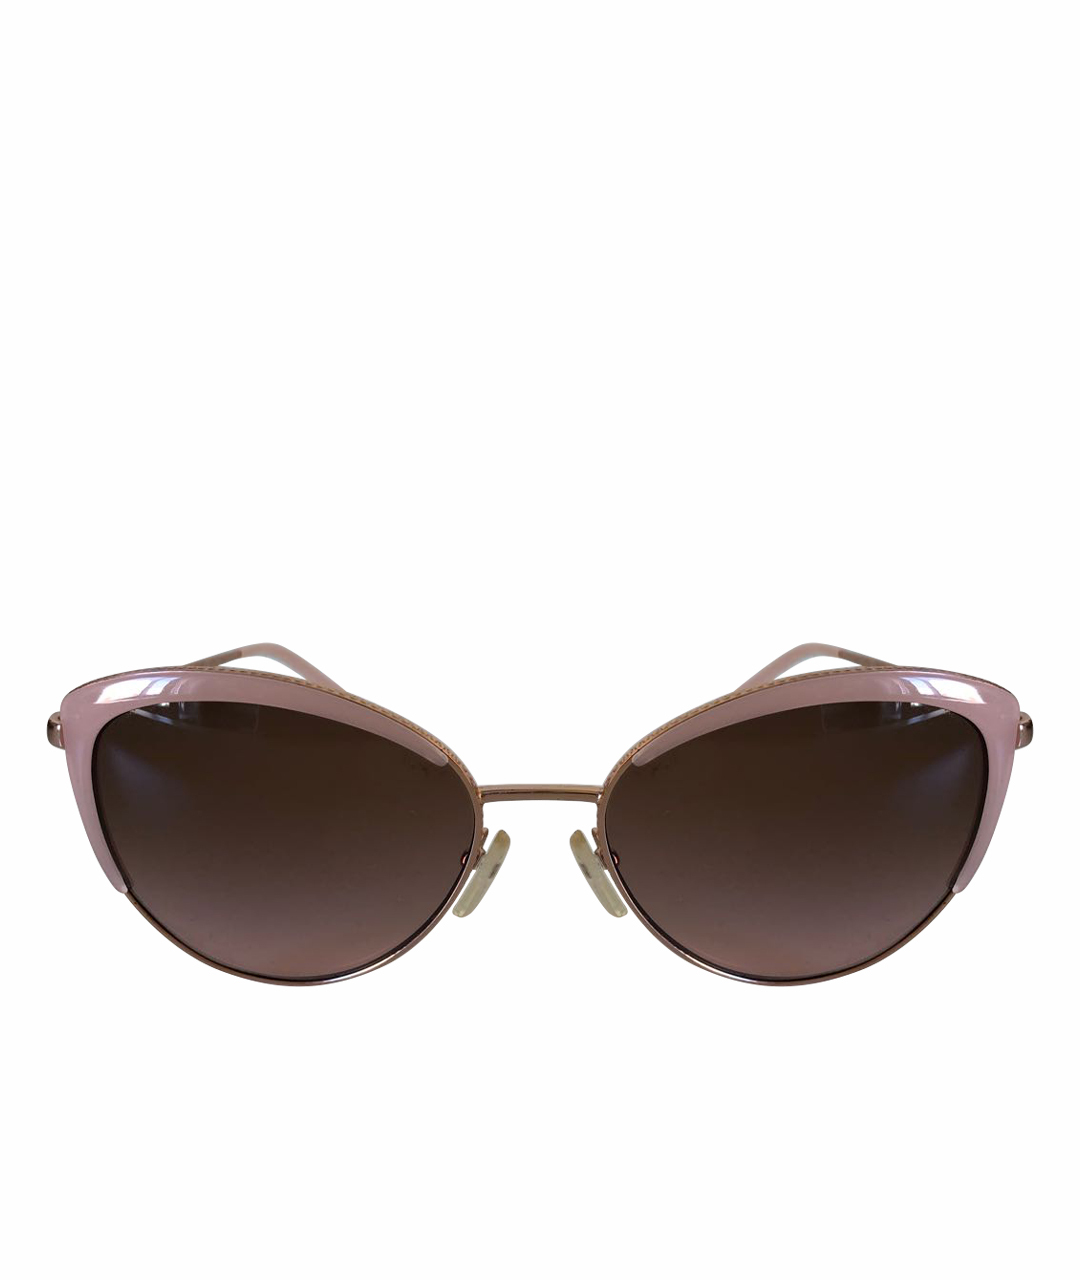 MICHAEL KORS Розовые металлические солнцезащитные очки, фото 1